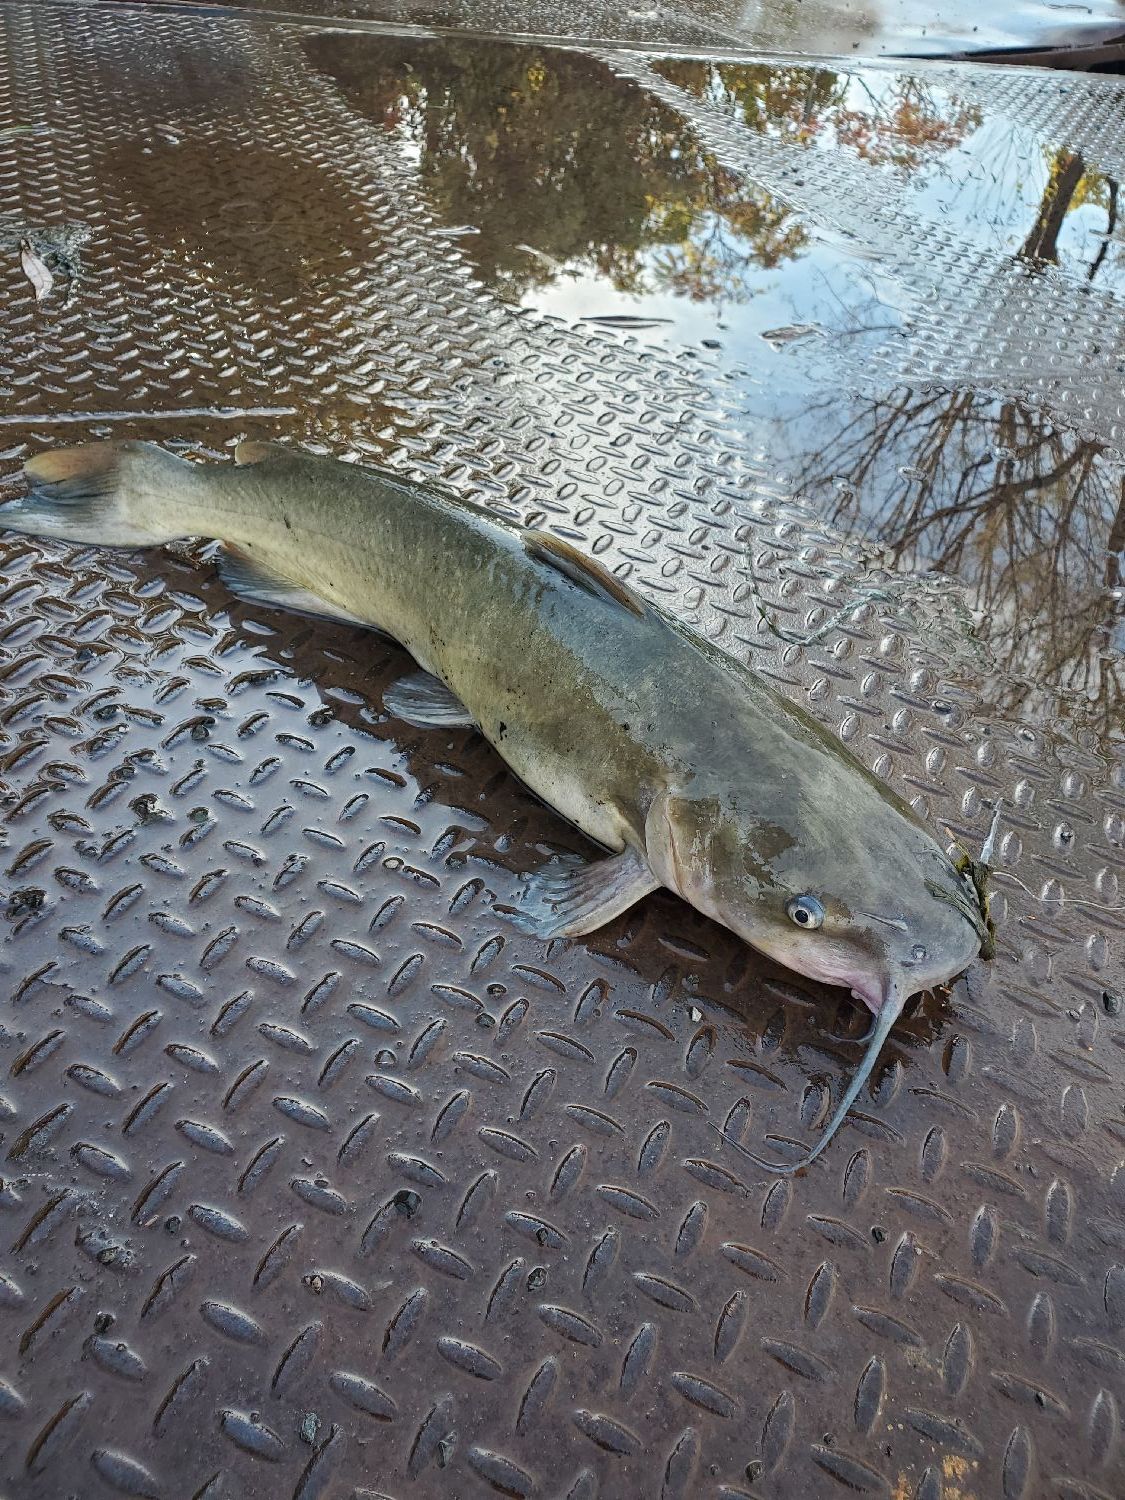 Last Channel Catfish caught, (Ictalurus Punctatus)